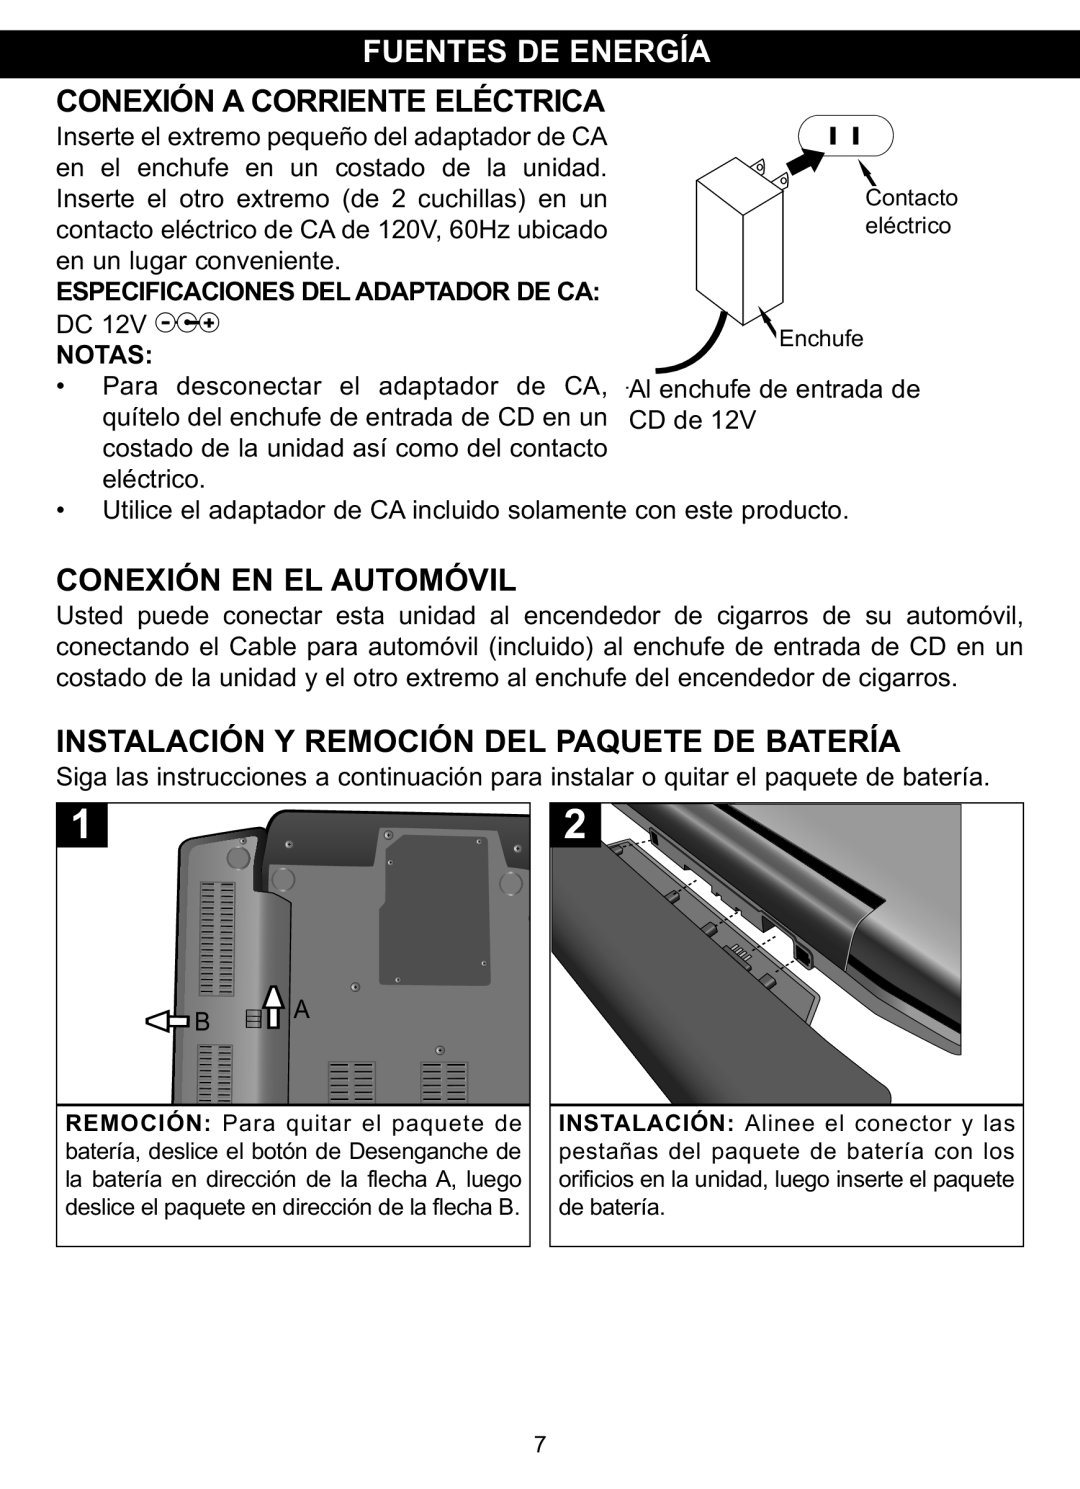 Memorex MVDP1088 manual Fuentes De Energía, Conexión En El Automóvil, Instalación Y Remoción Del Paquete De Batería, Notasz 